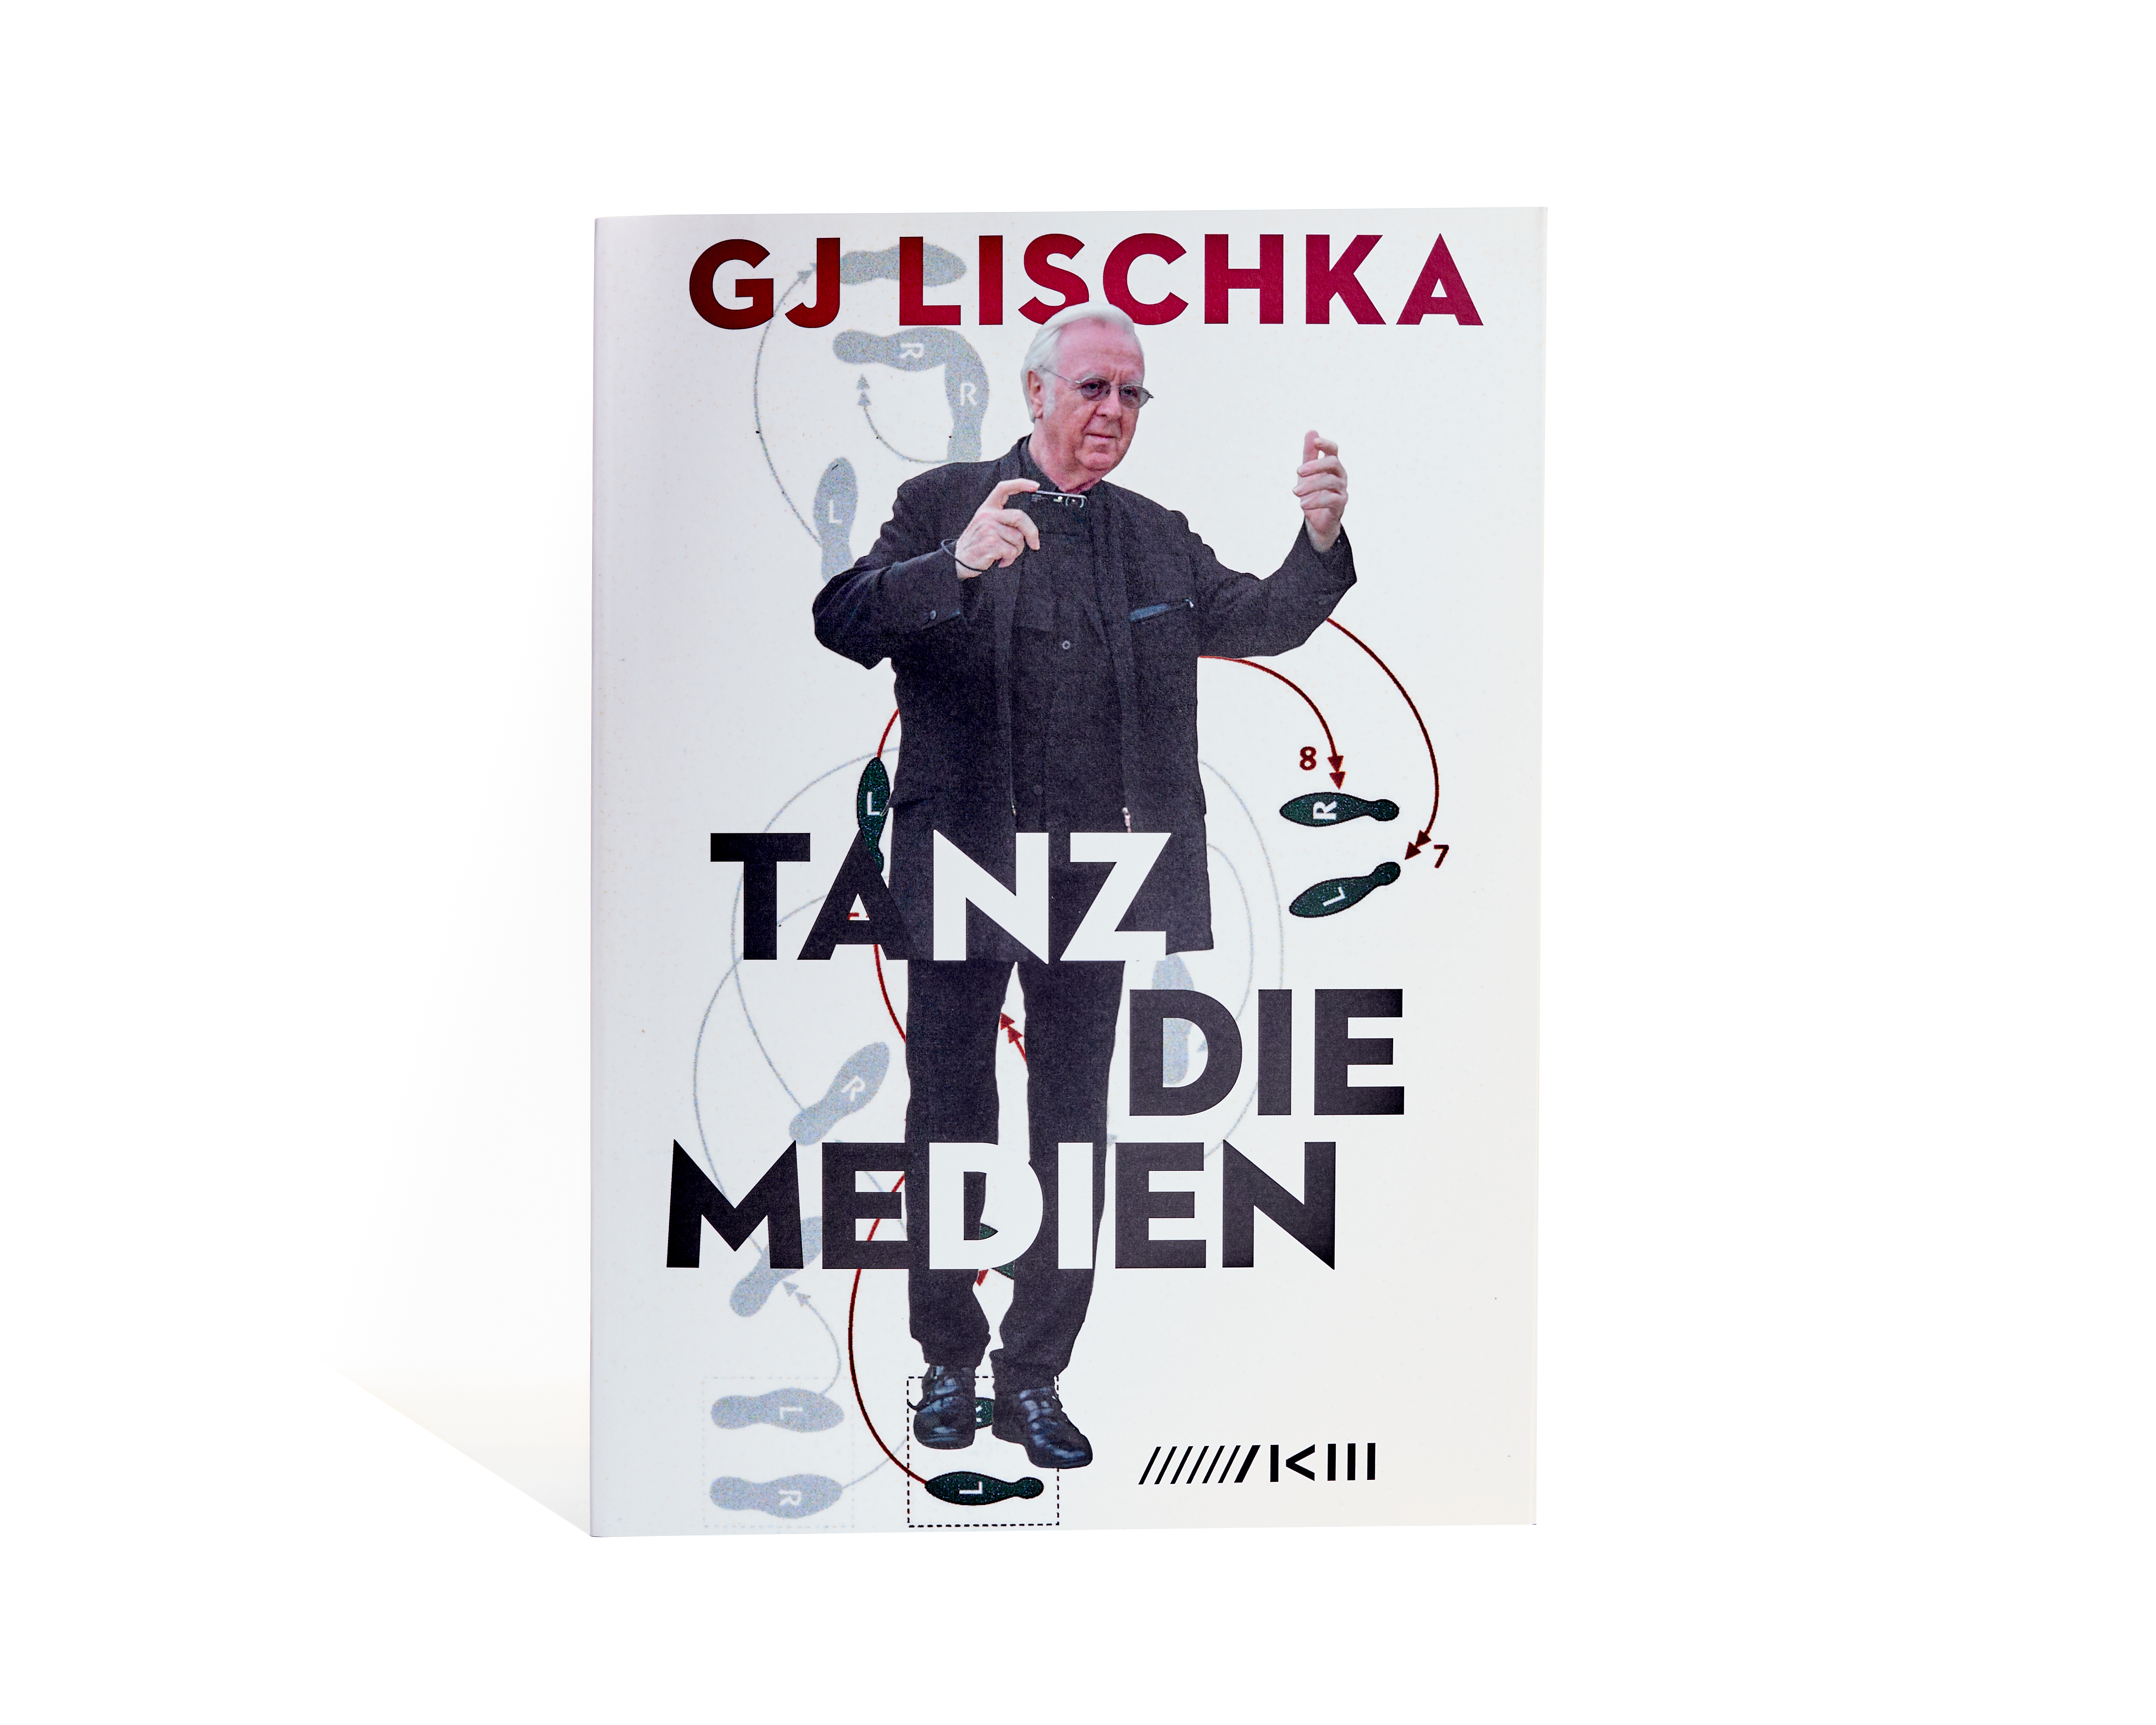 GJ Lischka - Tanz die Medien